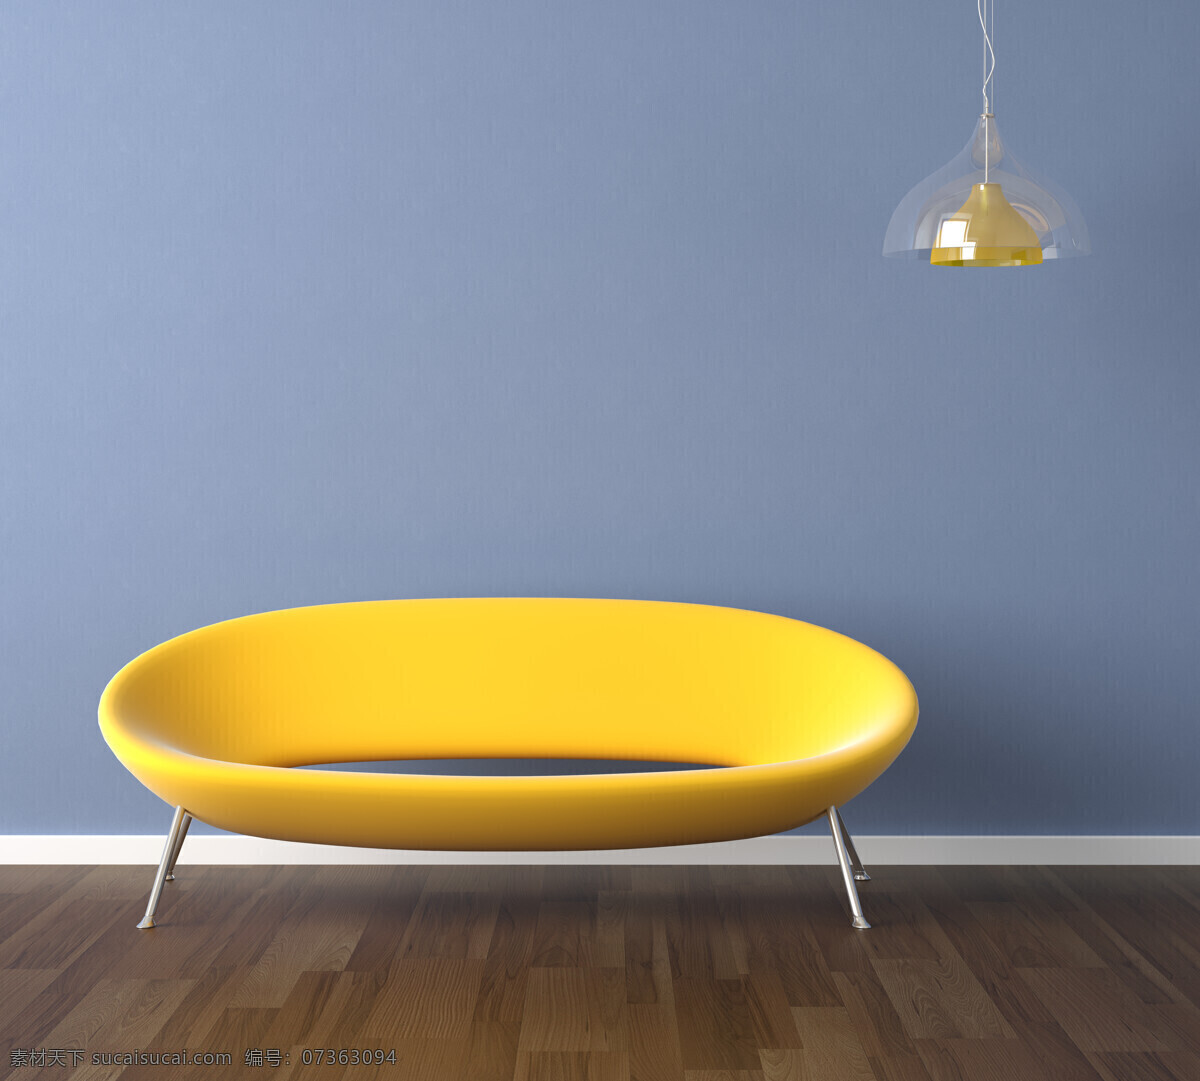 创意 创意家居设计 高清图片 环境设计 家居 家居设计 家具 沙发 设计素材 模板下载 室内设计 椅子 装饰素材